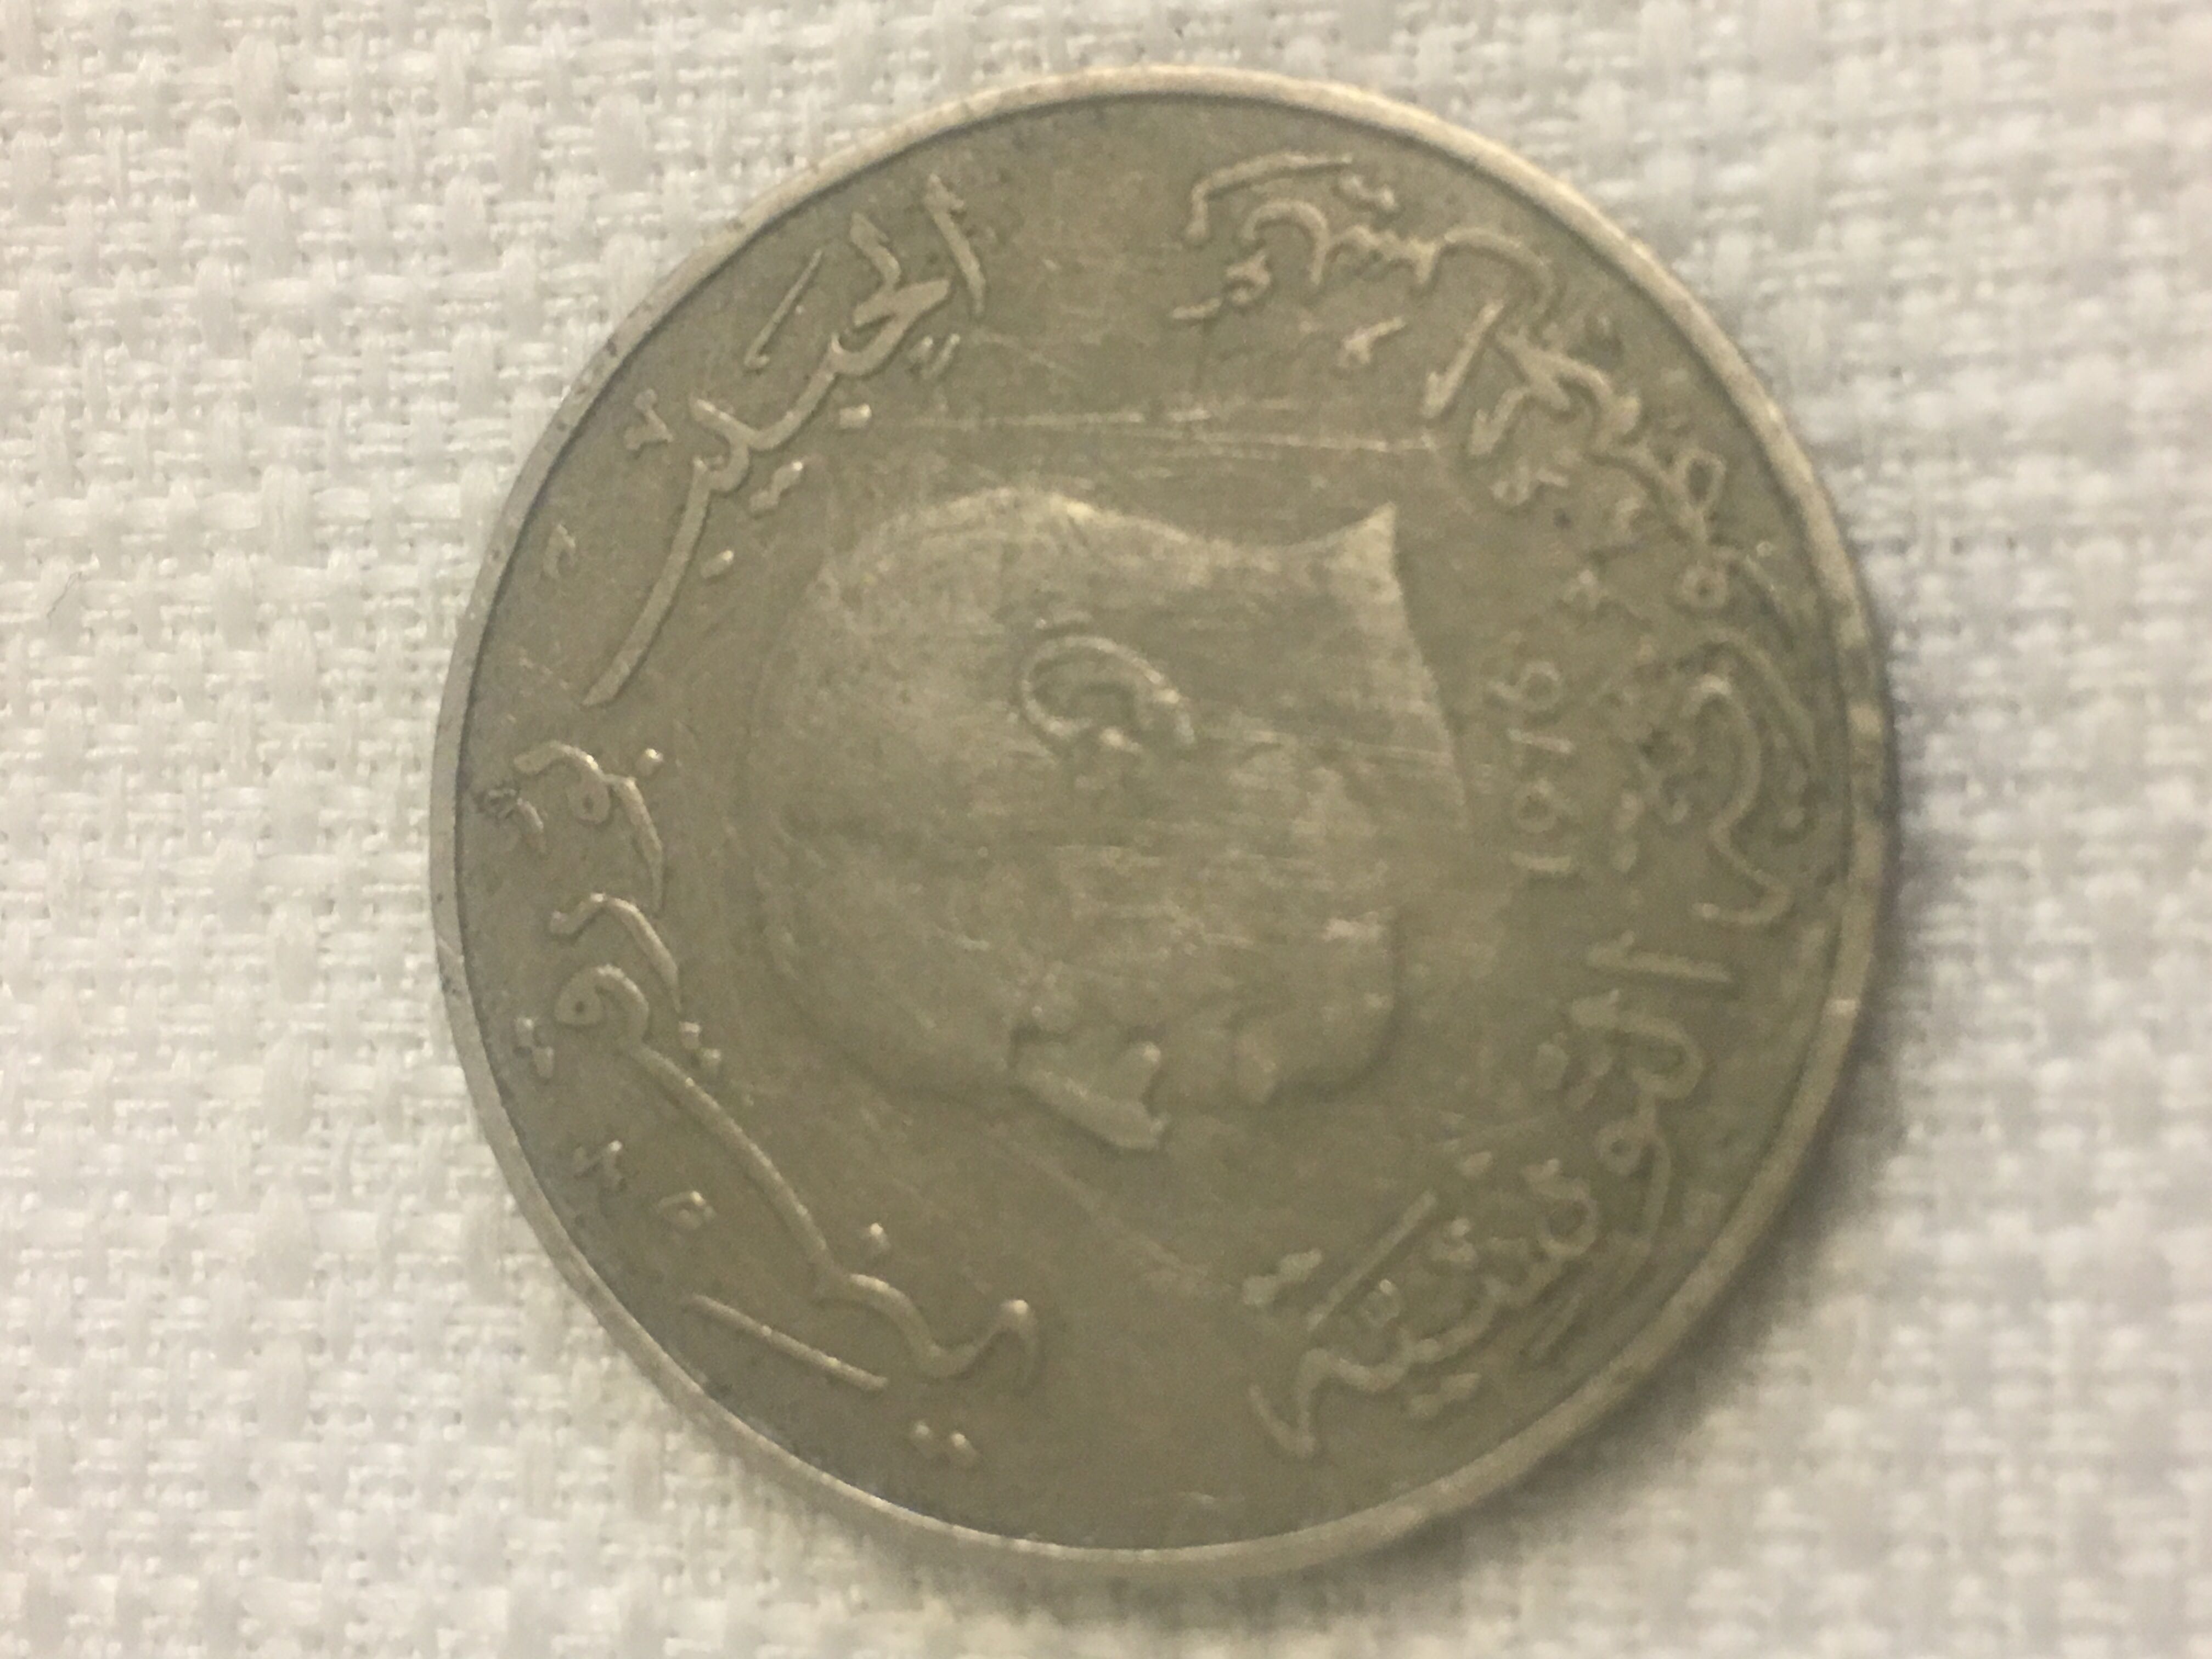 عملة تونسية حديد قيمة دينار واحد تعود لعهد الرئيس الحبيب بورقيبة